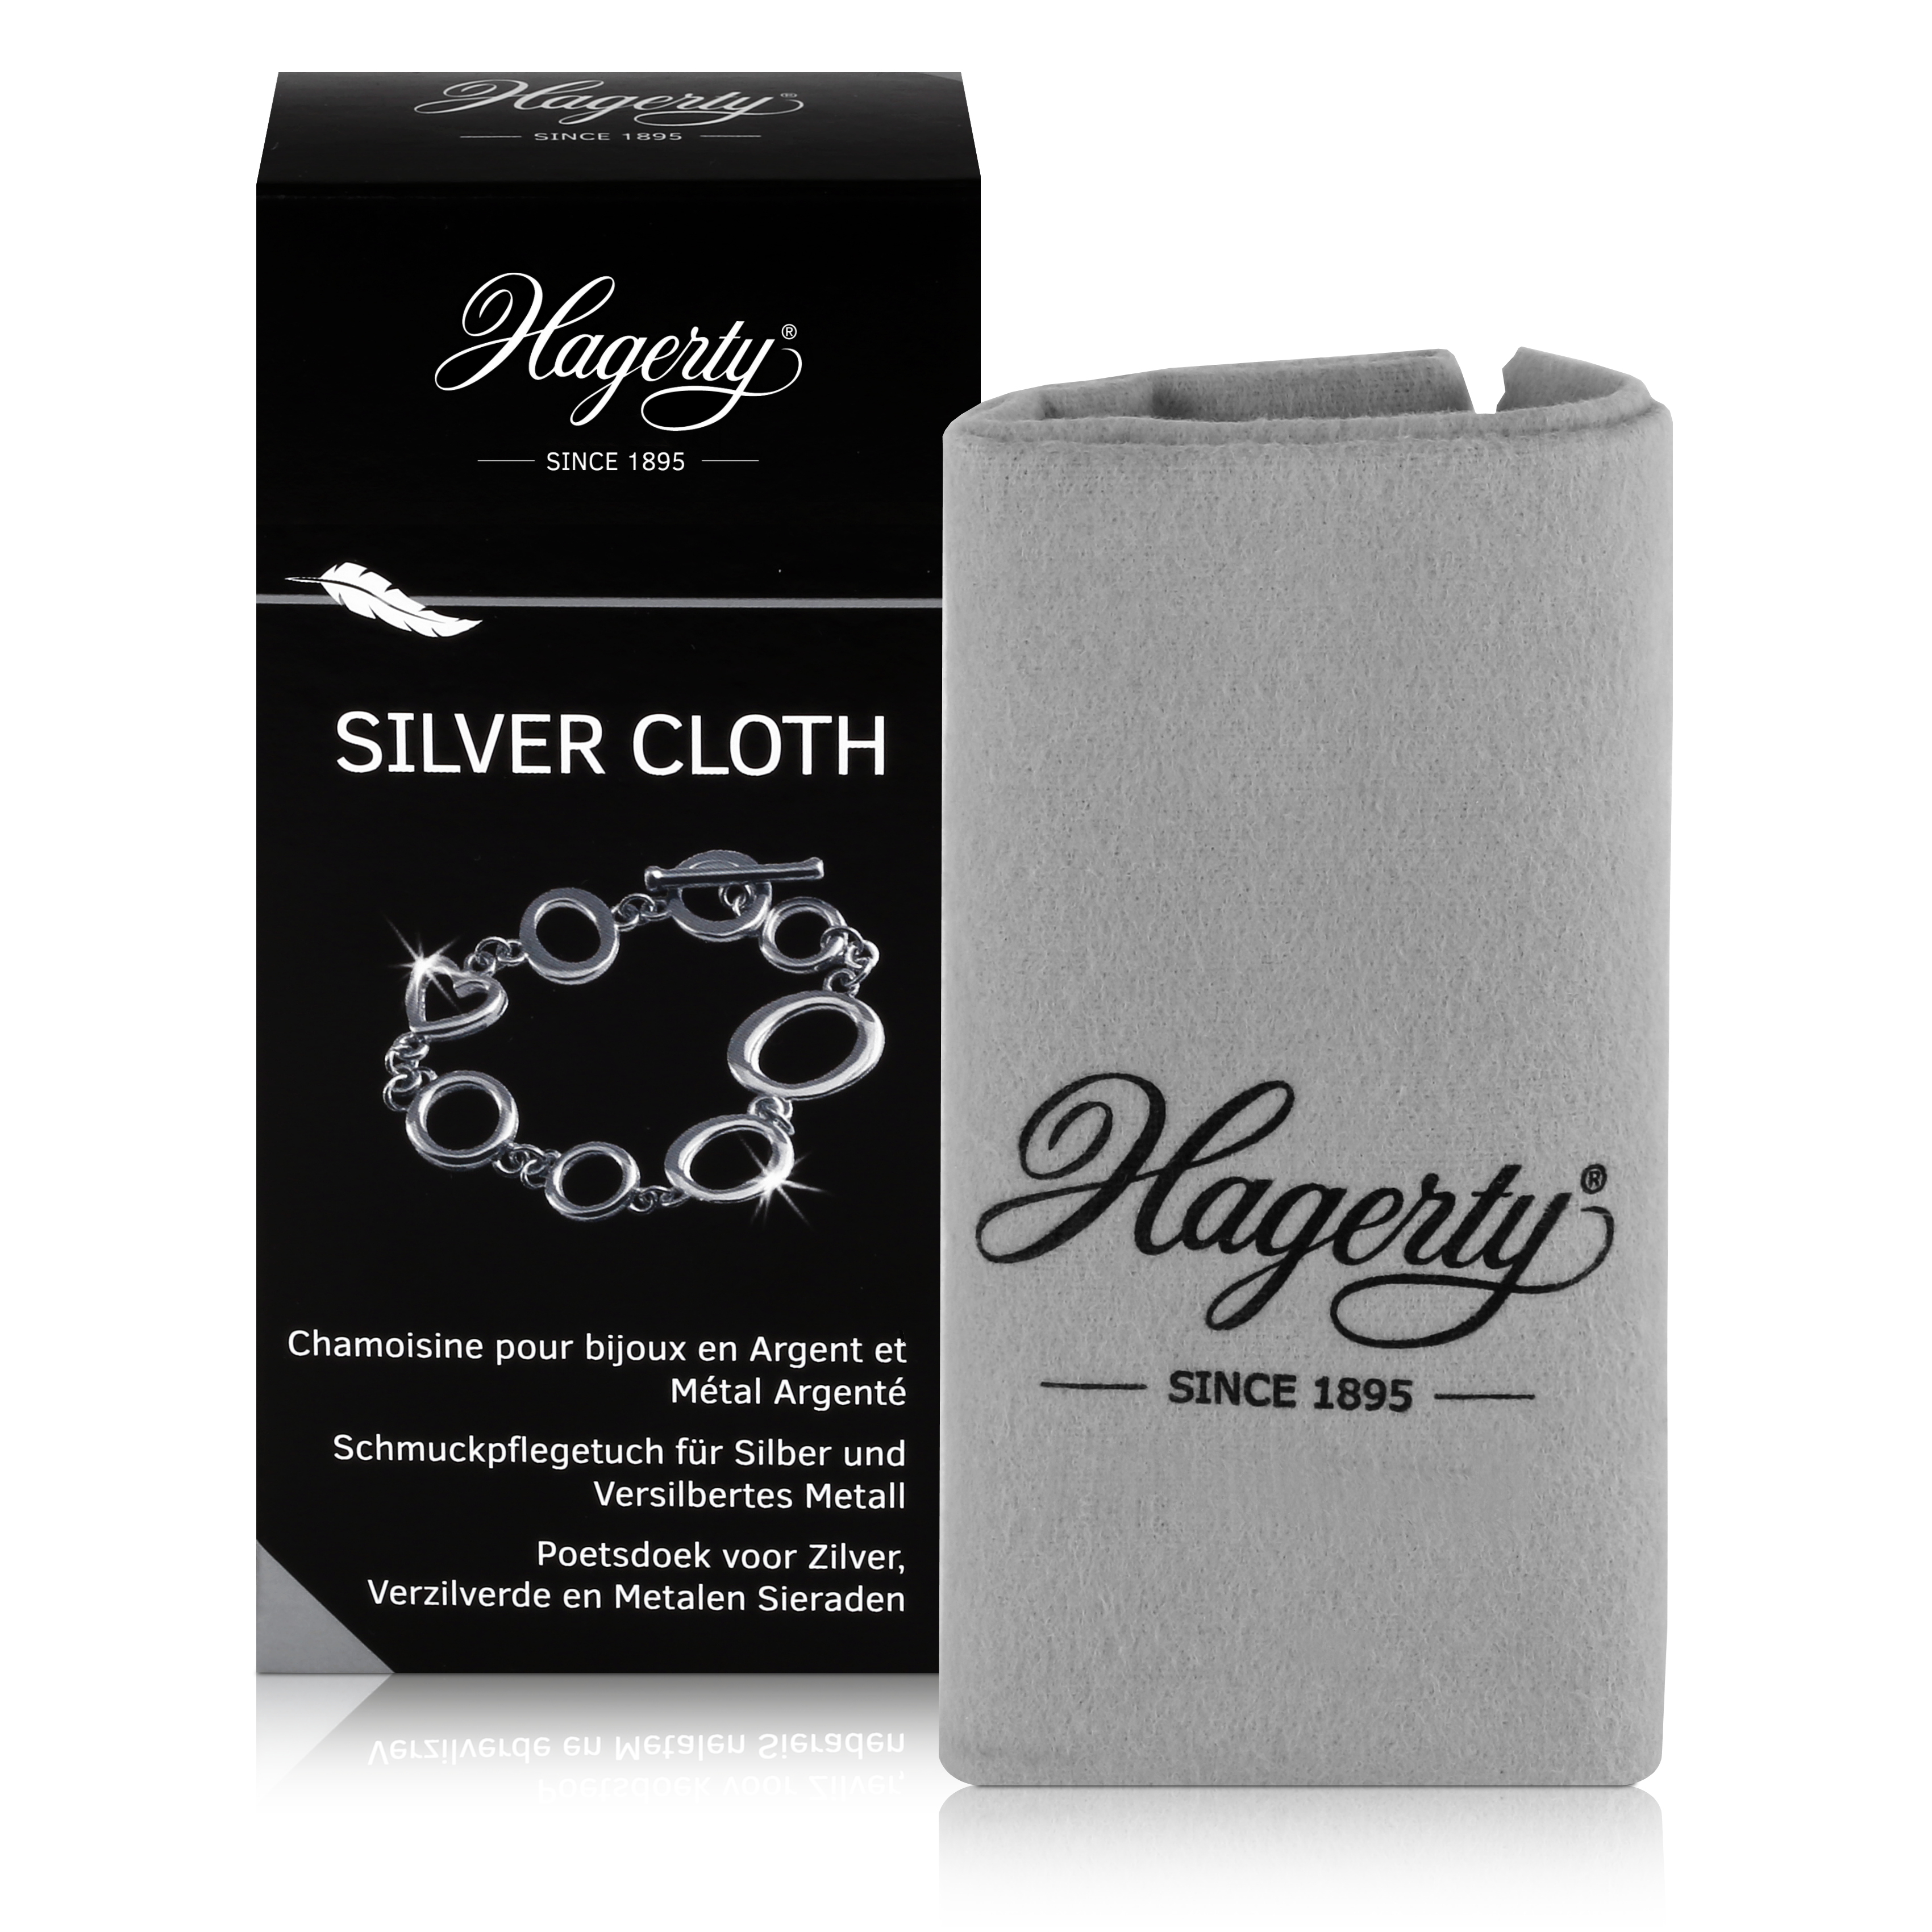 Hagerty Silver Cloth - Schmuckpflegetuch für